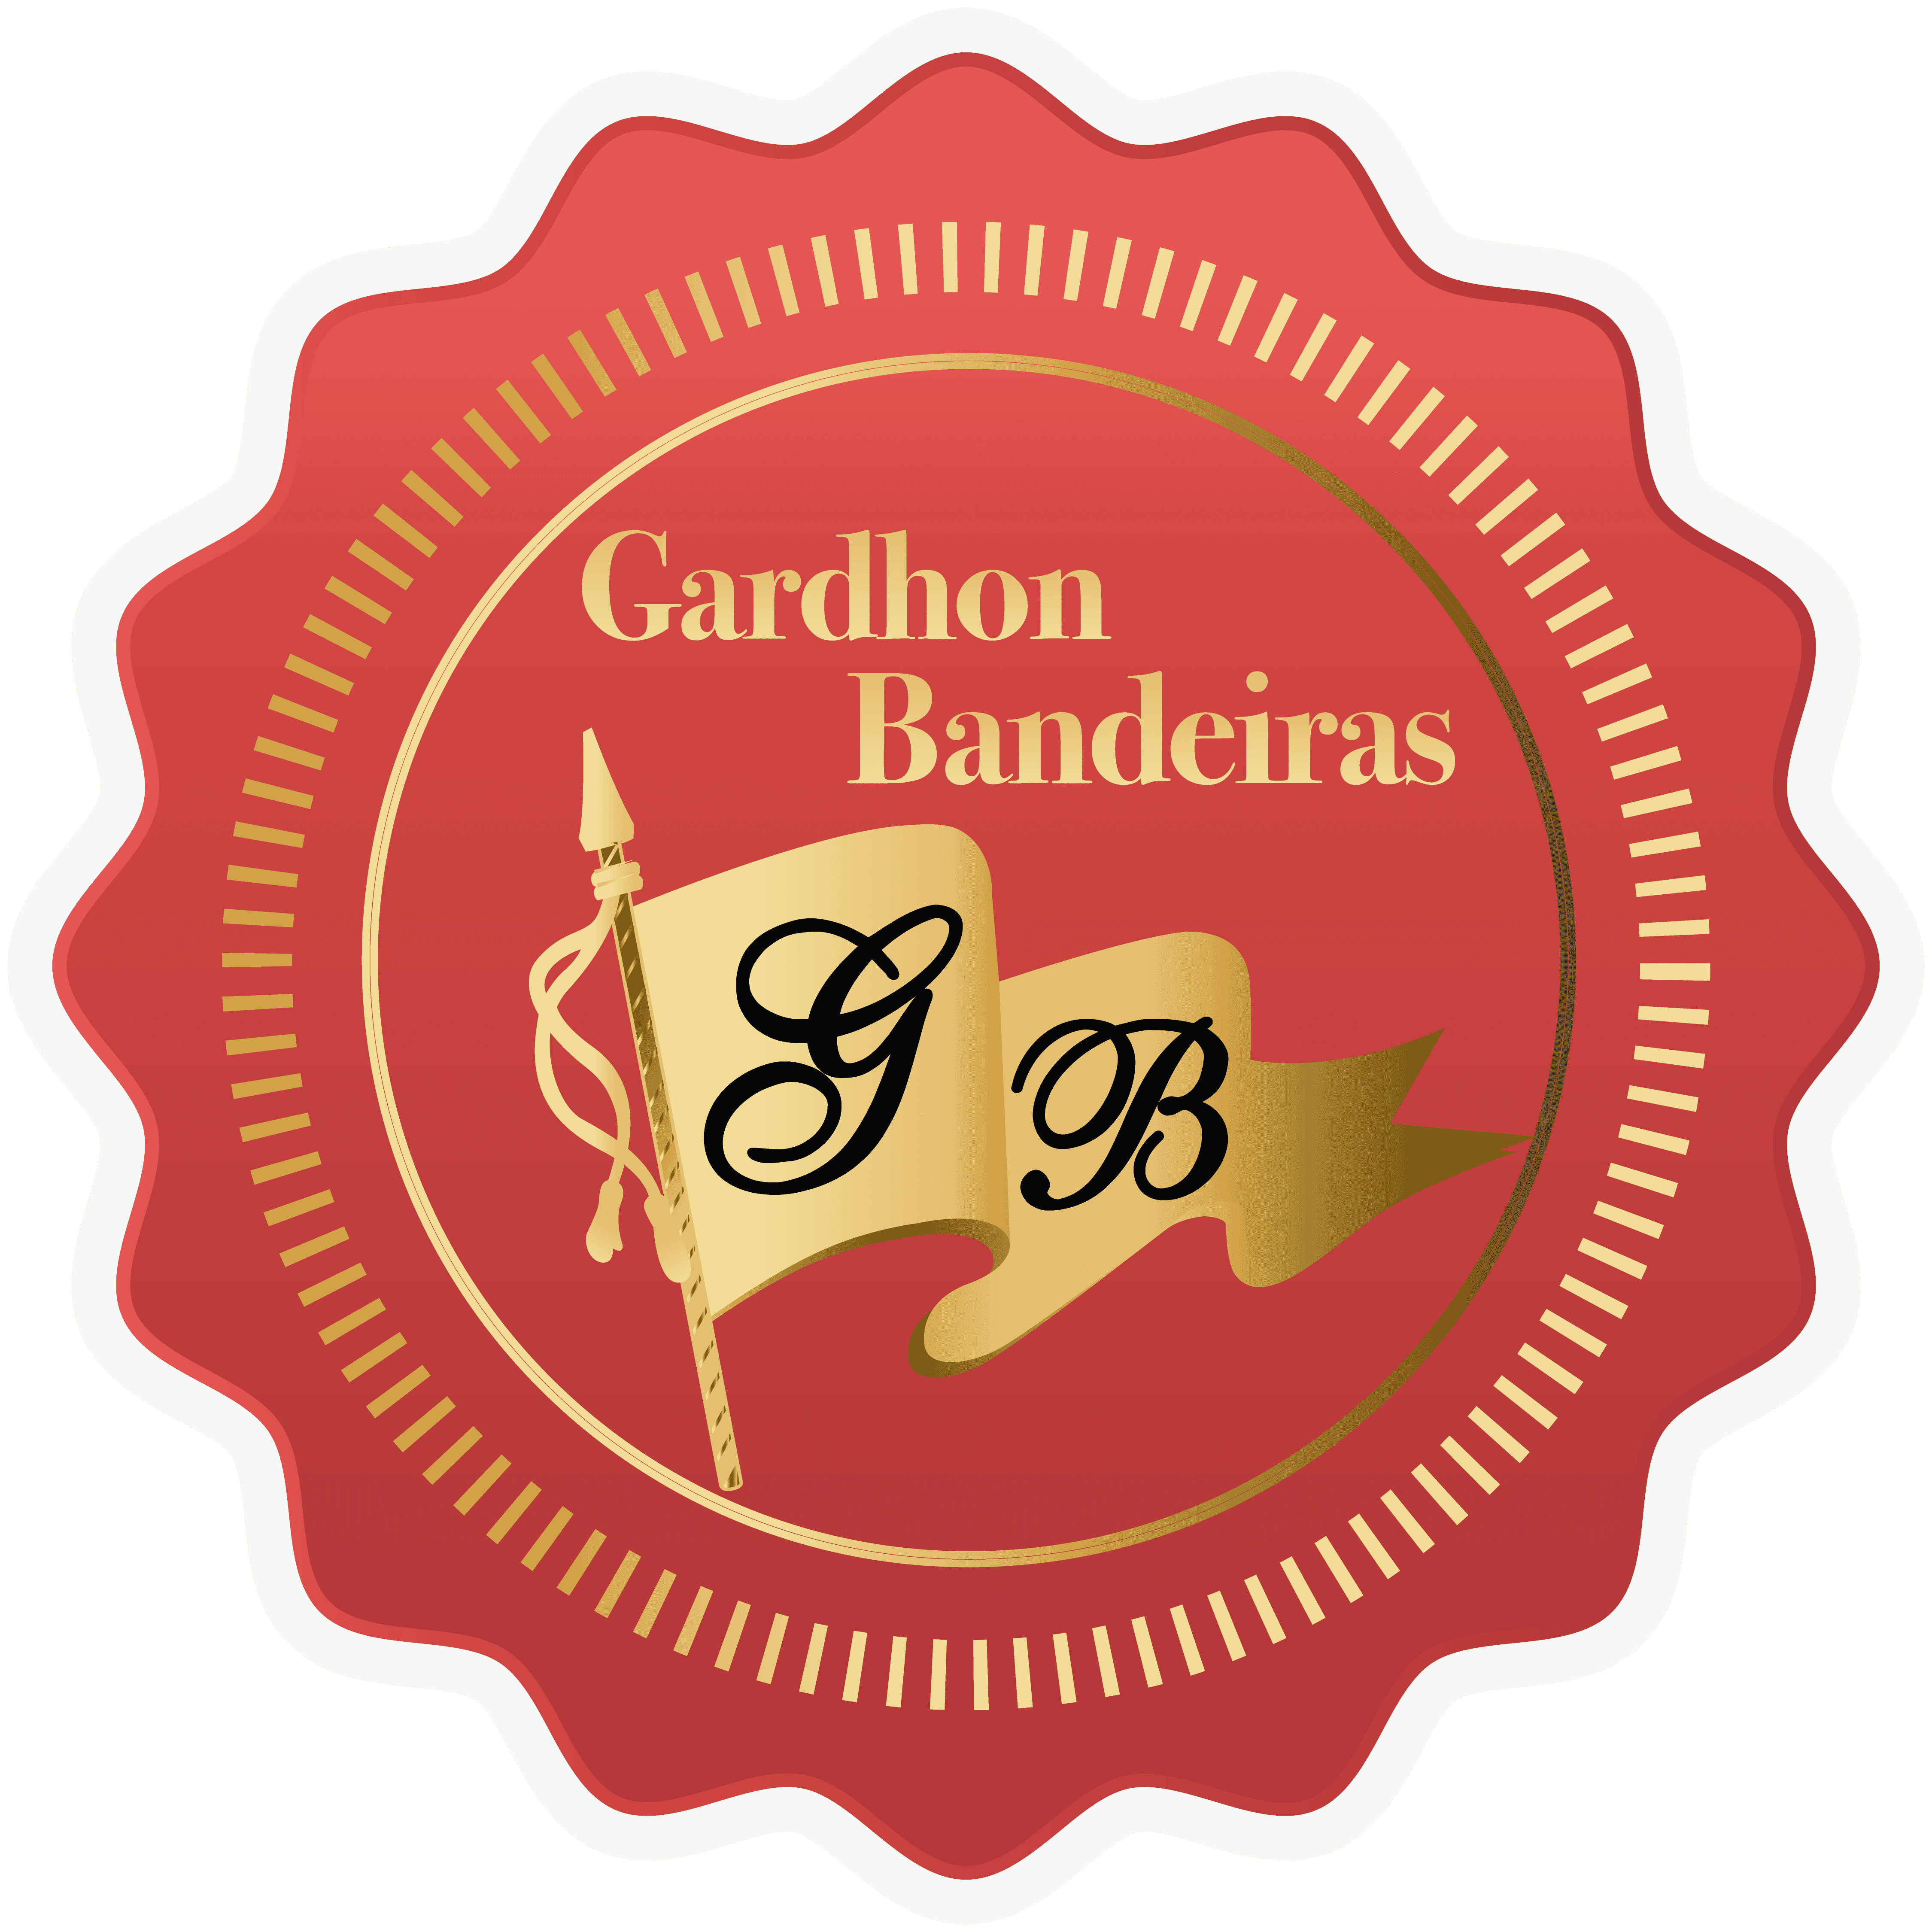  Colégio Gardhon Bandeiras 